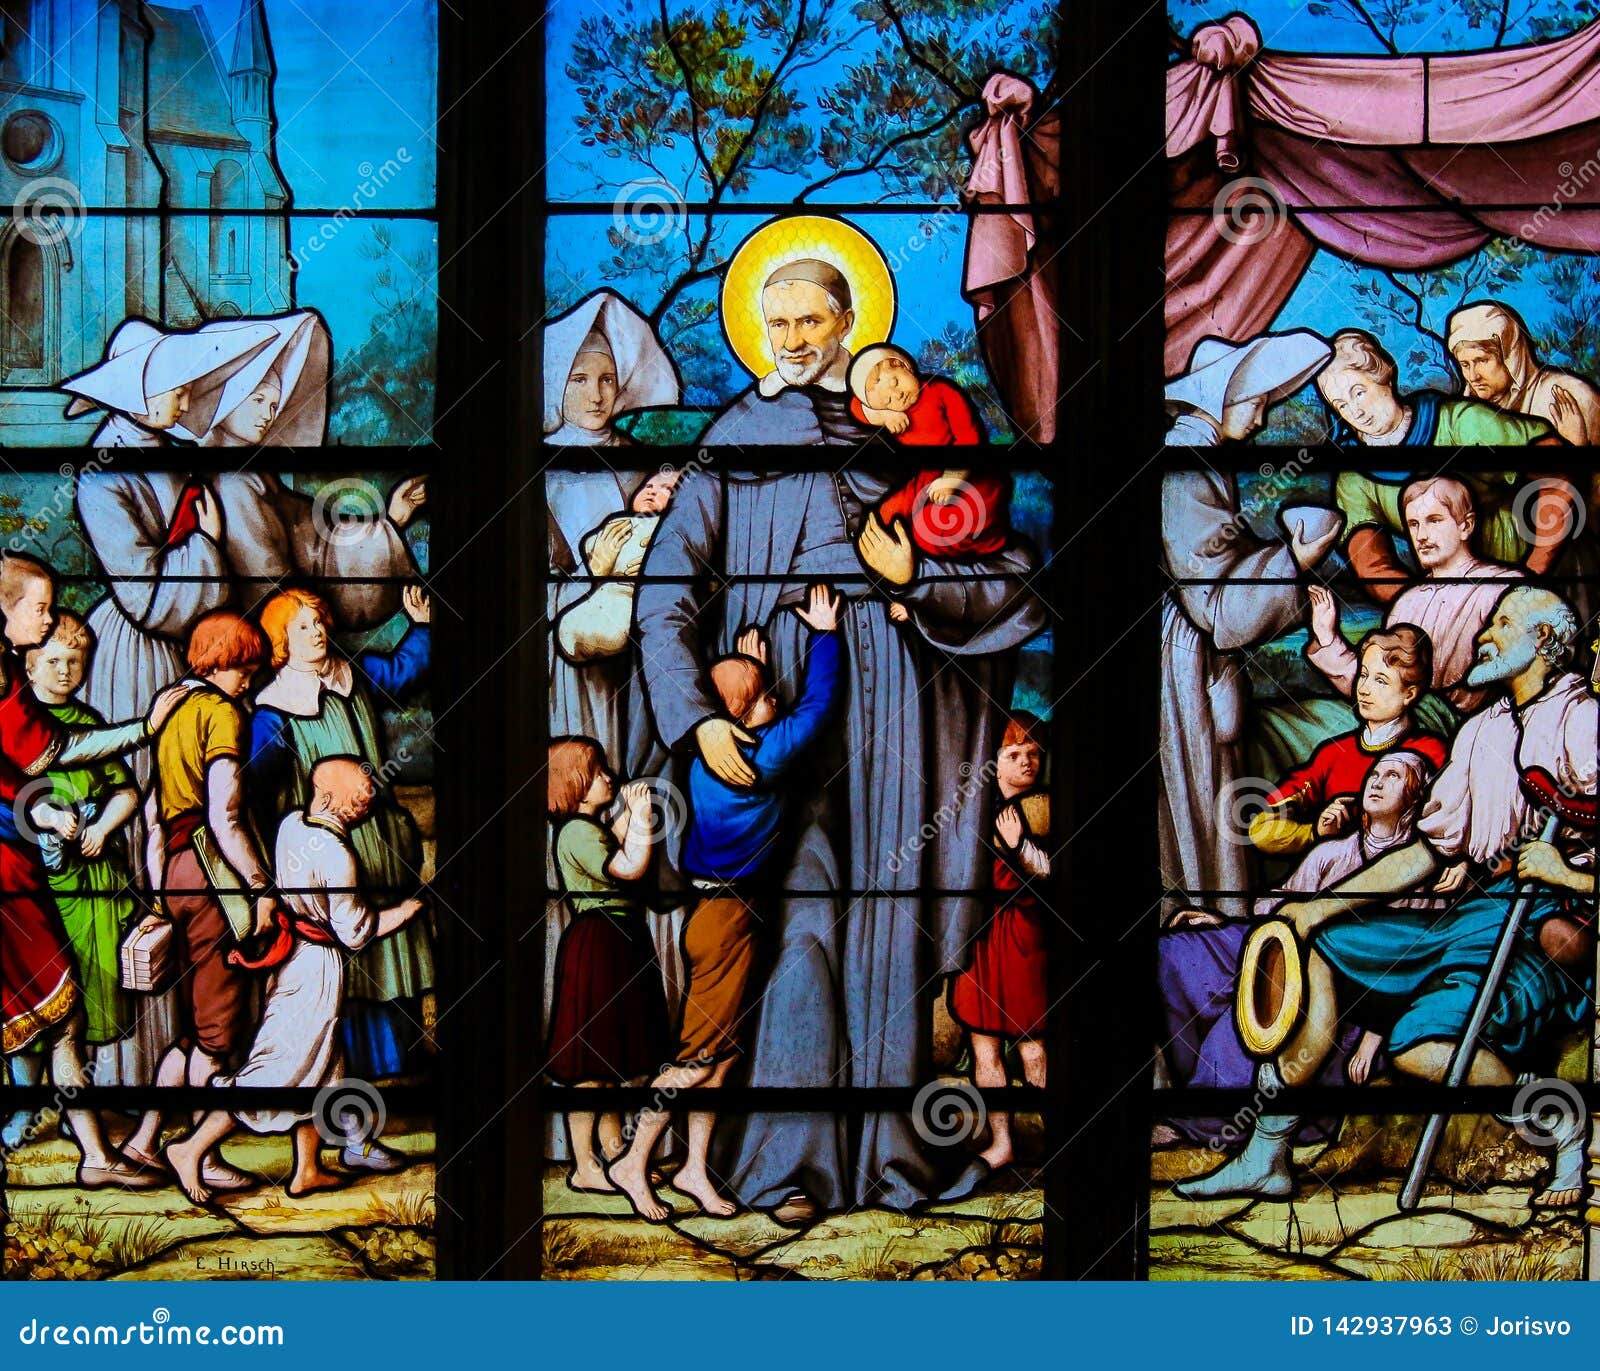 saint vincent de paul on a stained glass in paris